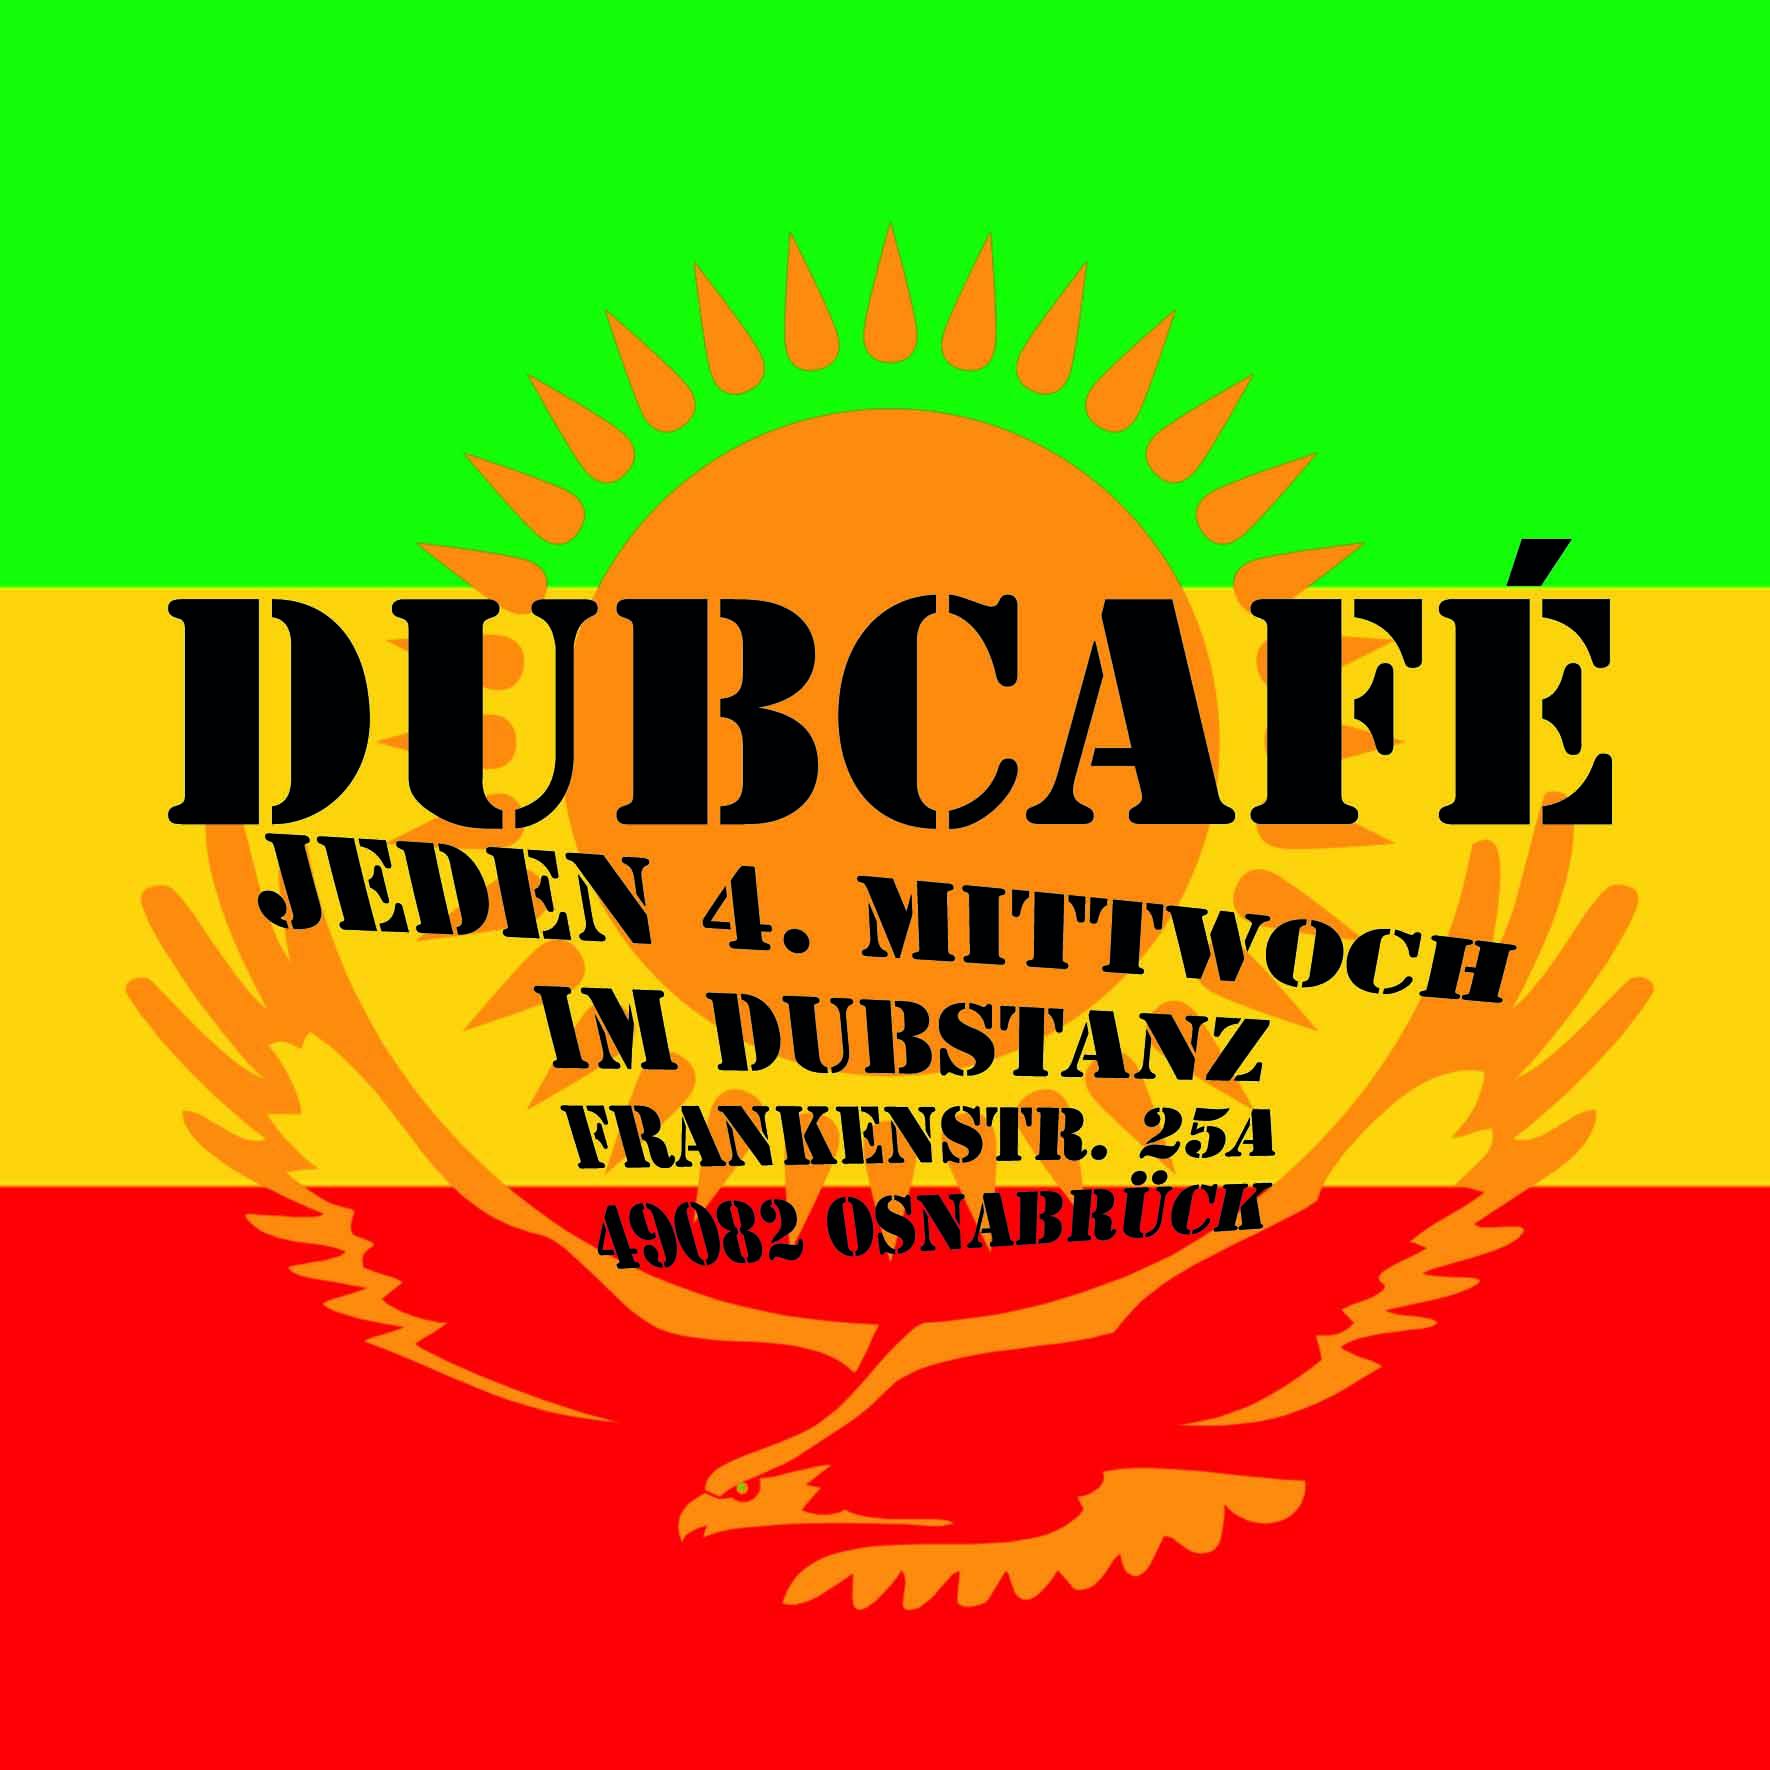 Dub Café, jeden 4. Mittwoch im SubstAnZ